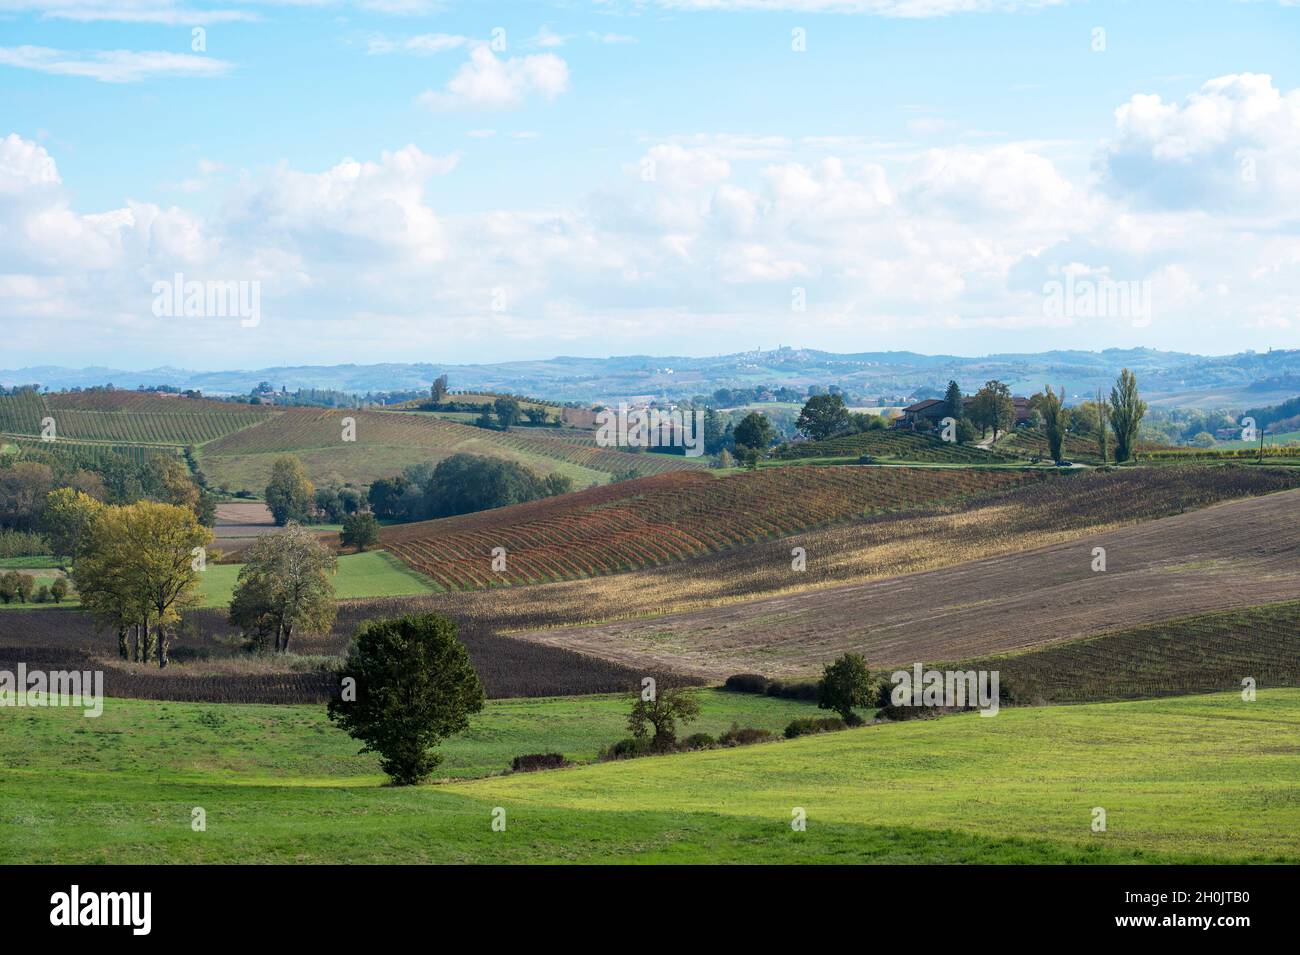 Italy, Piedmont, Monferrato, landscape around Ozzano Monferrato Stock Photo